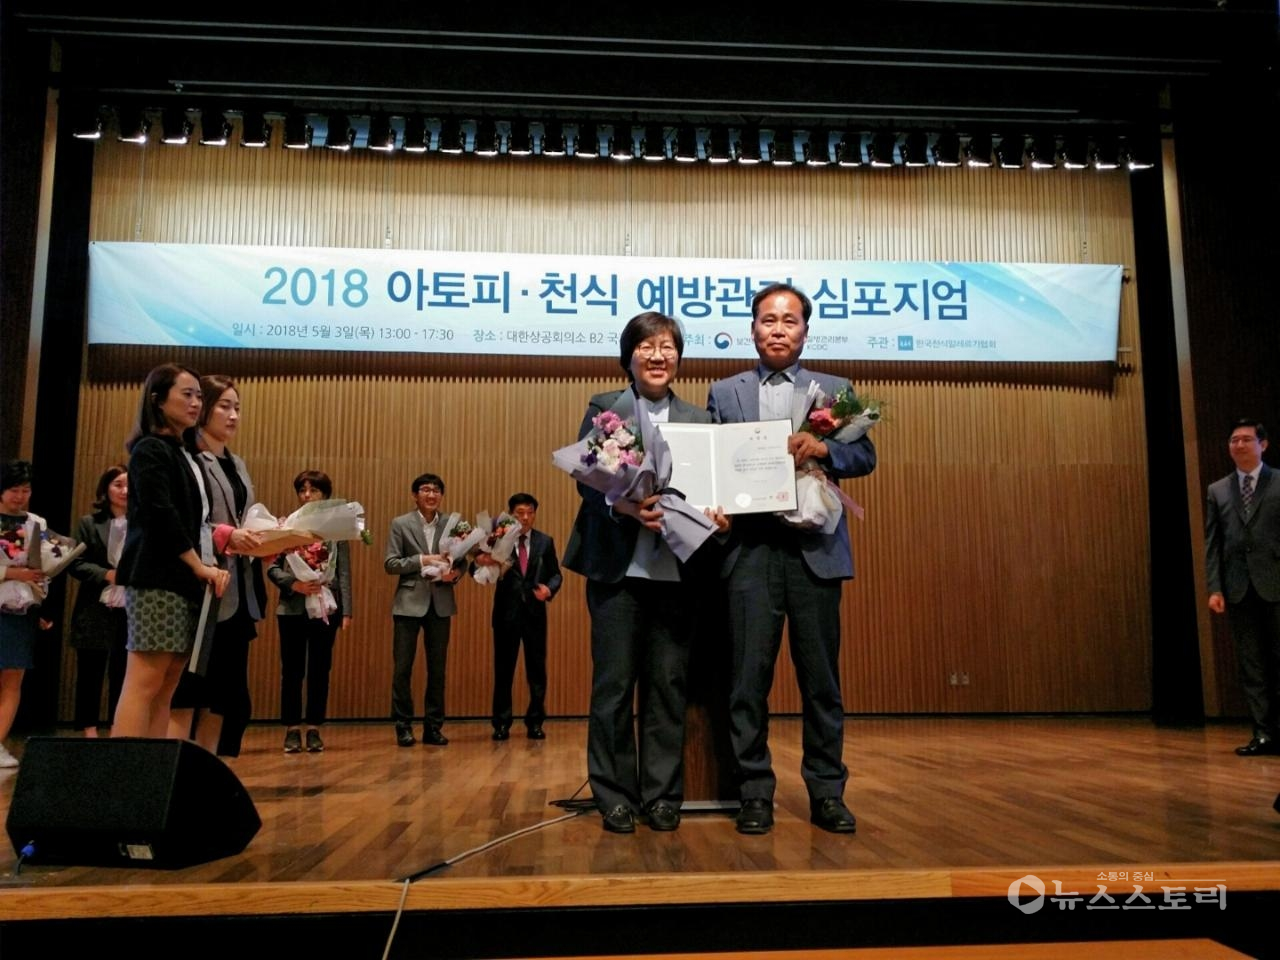 아토피․천식 예방관리사업 우수기관 표창 수상 장면.(사진=보령시)